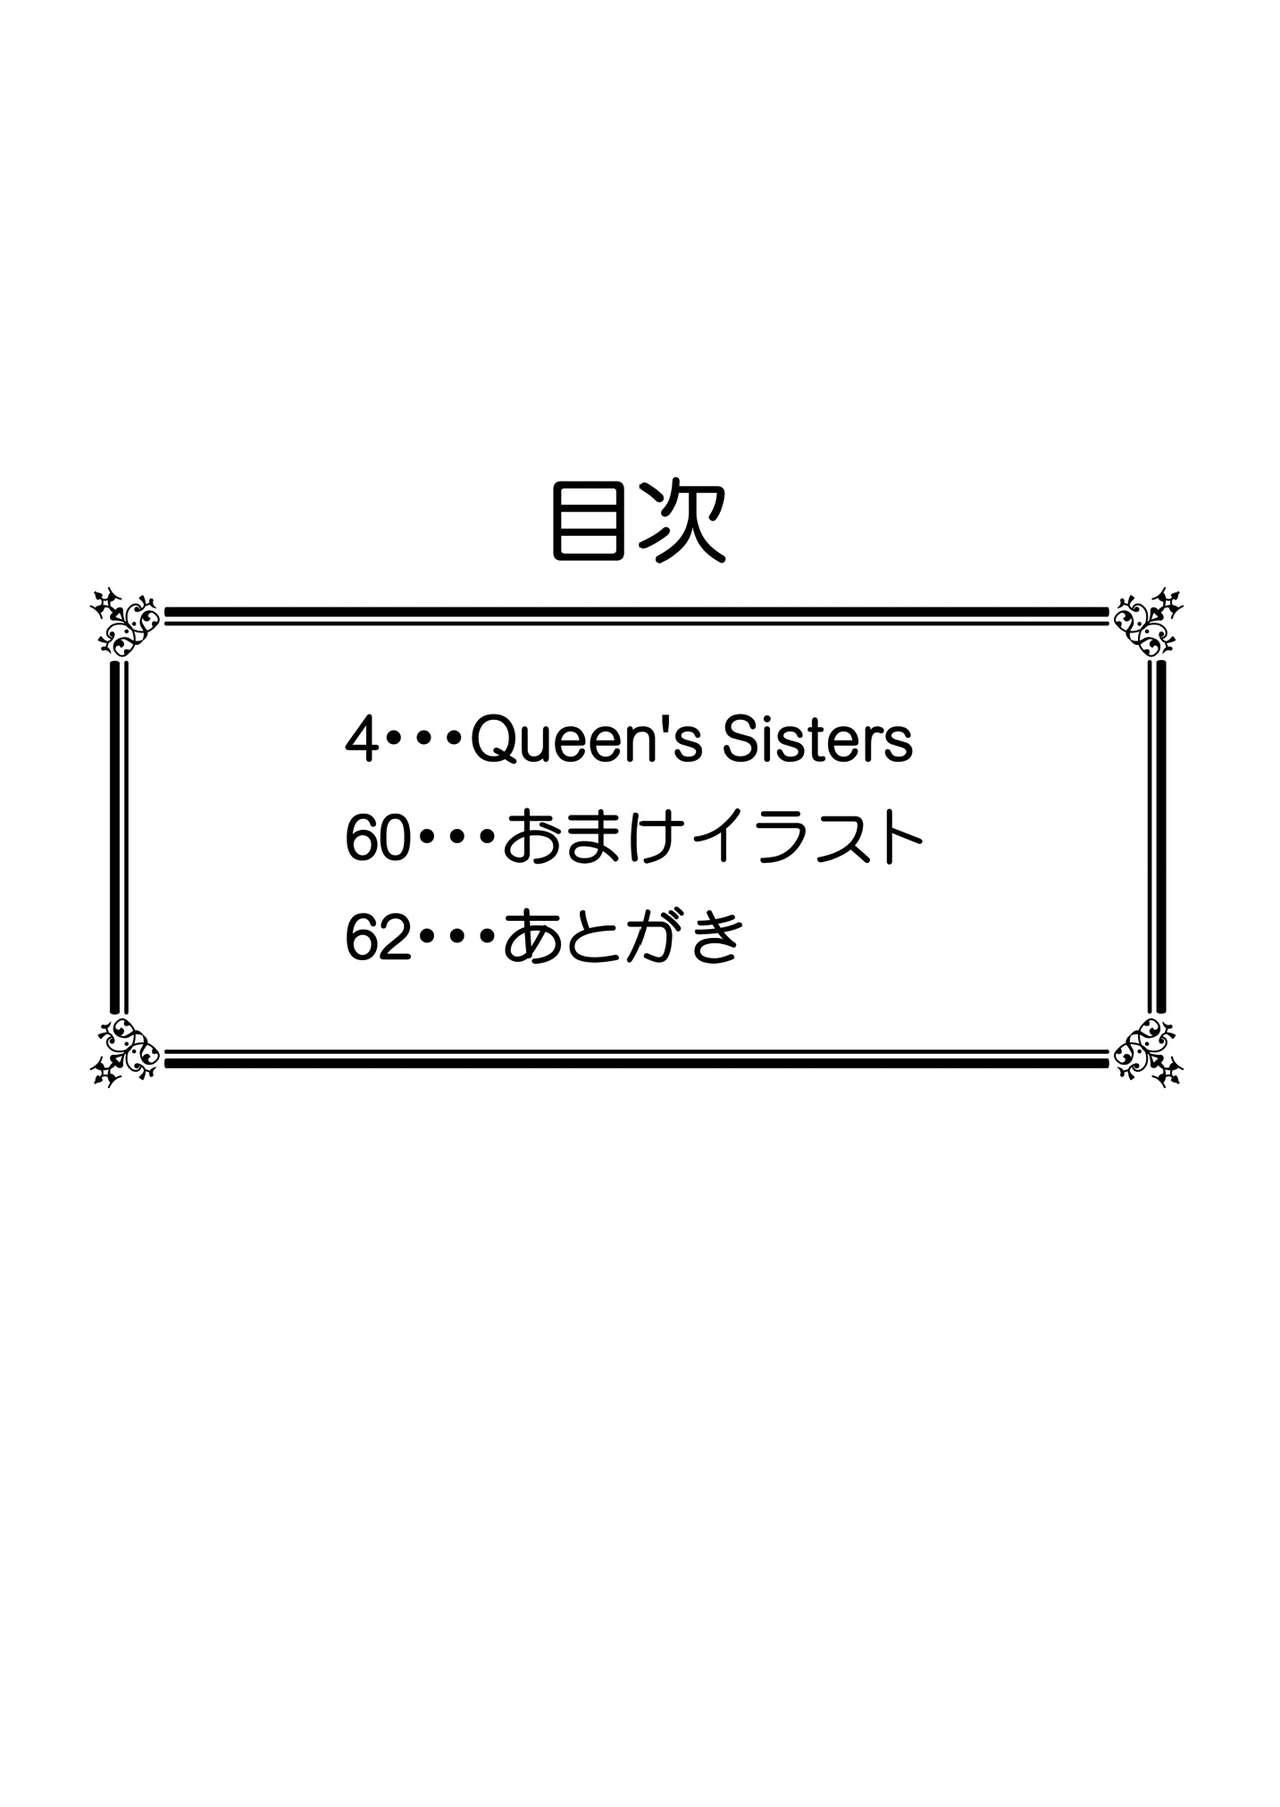 Hottie Queen's Sisters - Queens blade Facial - Page 4